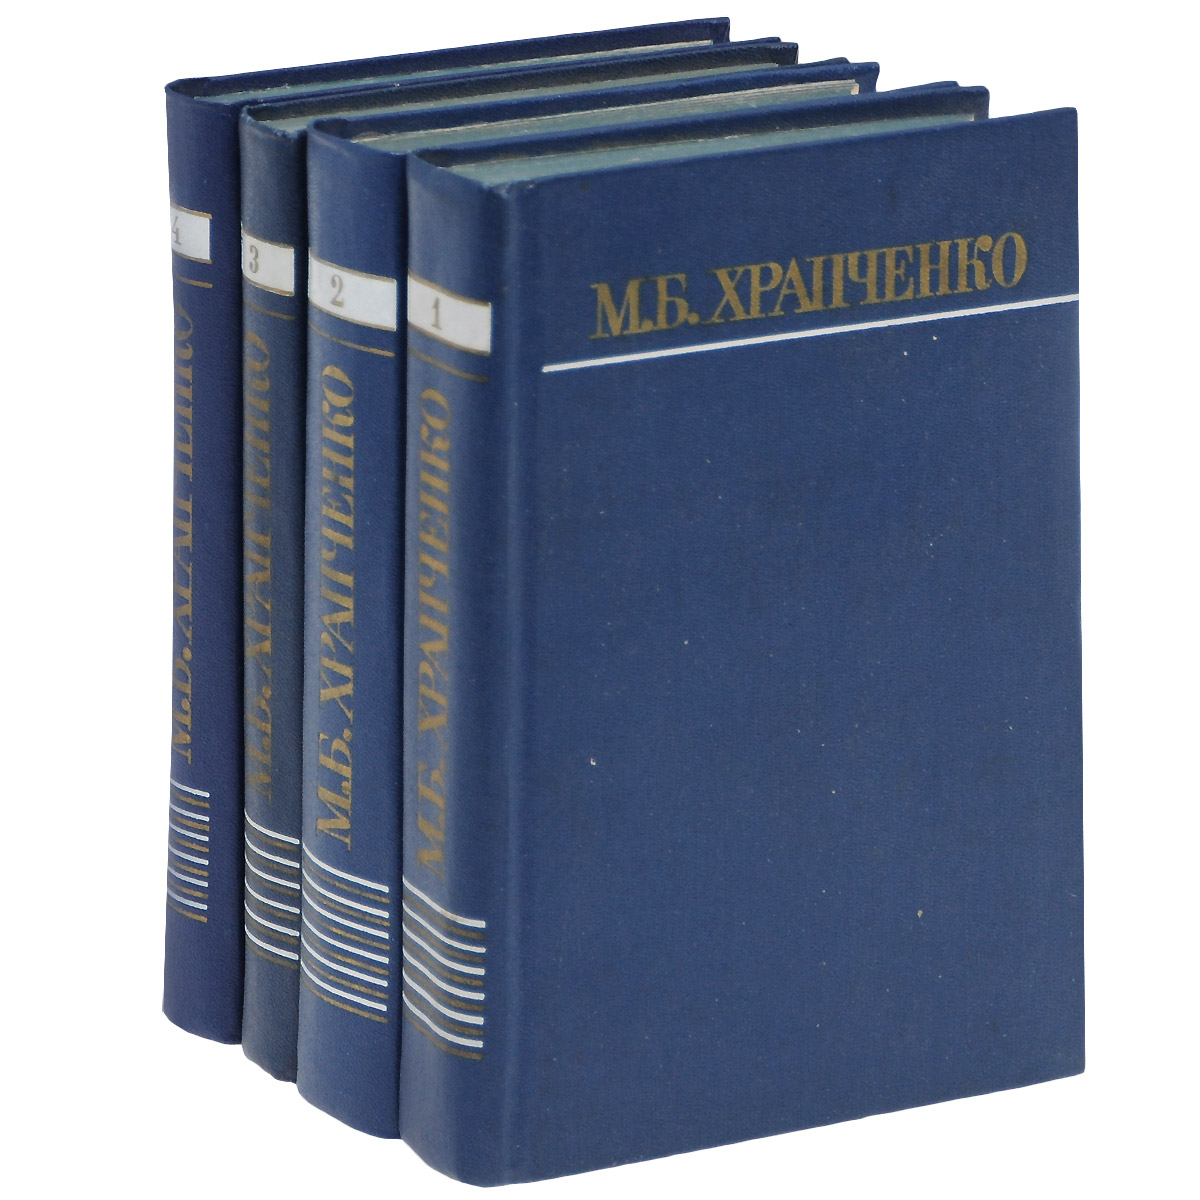 М. Б. Храпченко. Собрание сочинений в 4 томах (комплект)